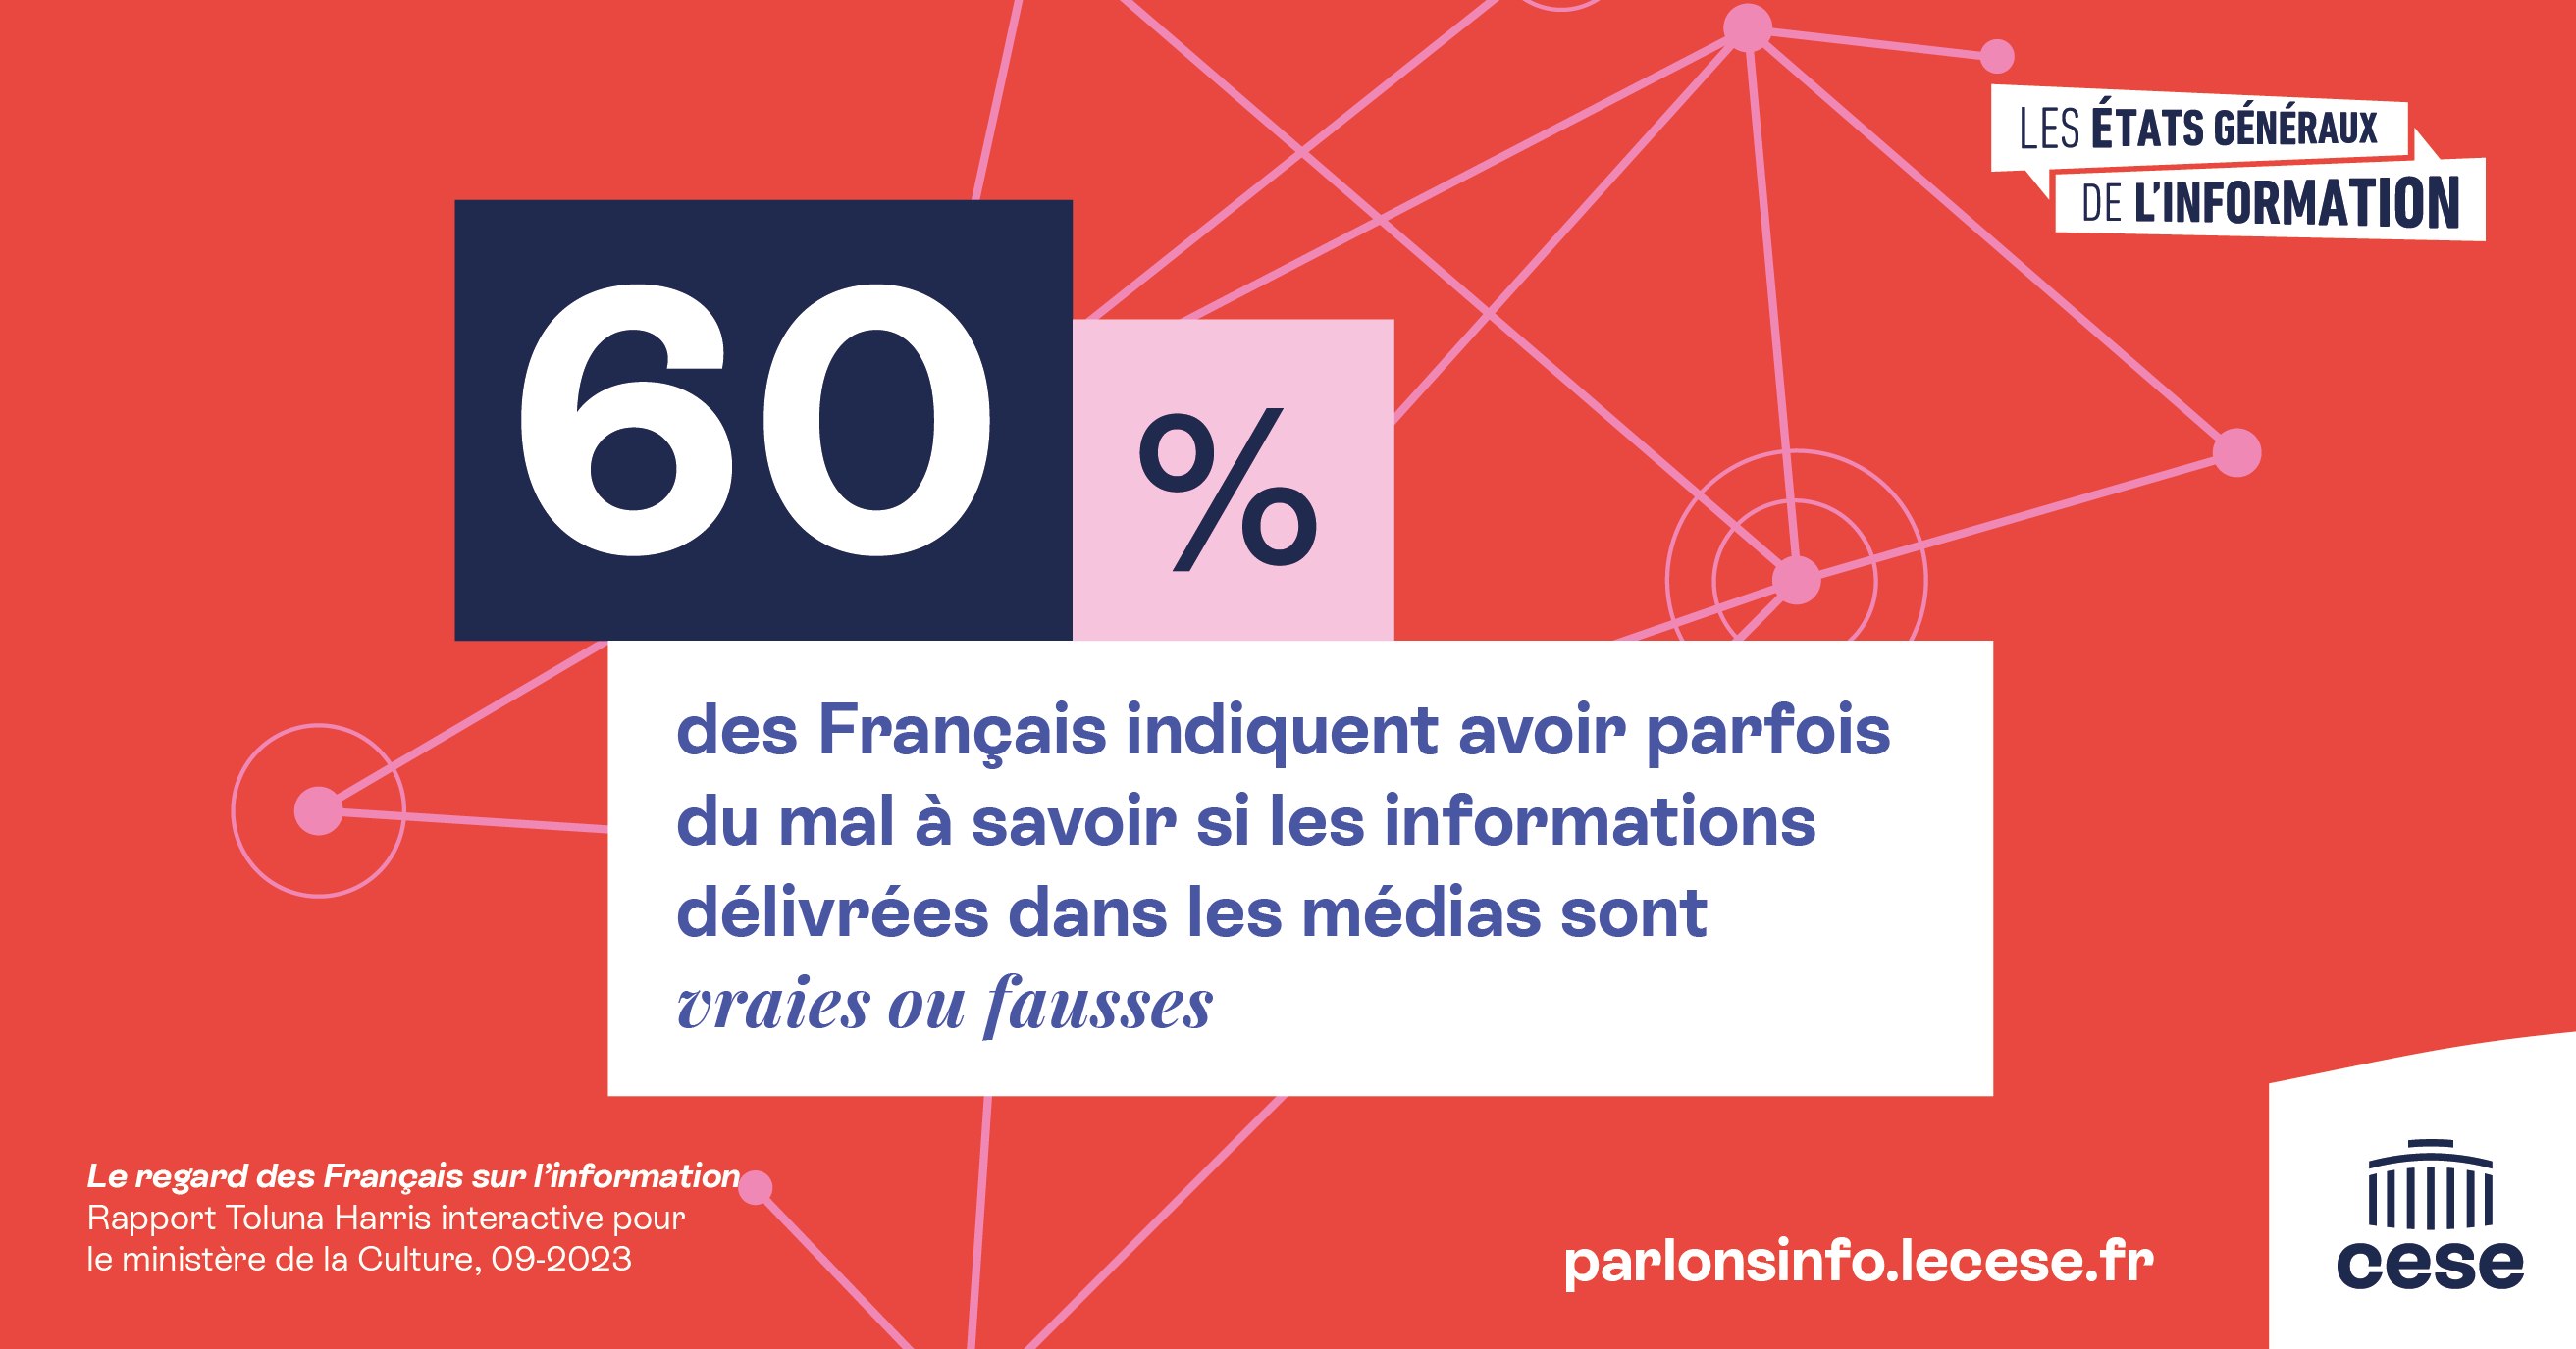 60% des Français indiquent avoir parfois du mal à savoir si les informations délivrées dans les médias sont vraies ou fausses. 